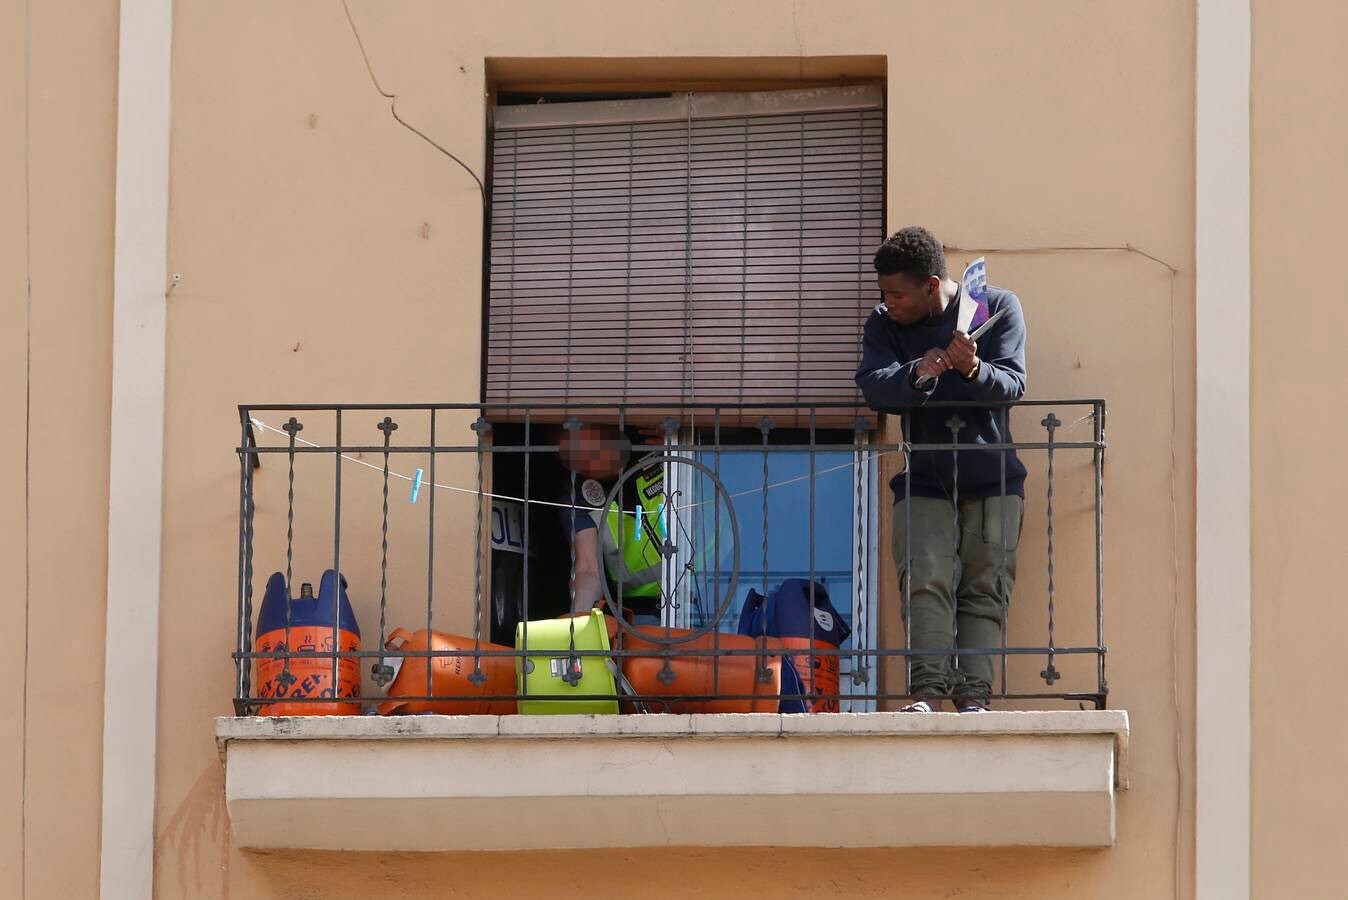 Un joven se ha atrincherado este lunes en el balcón de su casa, en la avenida Peset Aleixandre de Valencia, con varias bombonas de butano y dos cuchillo. Un negociador de la Policía le ha convencido para que entrada en el piso, tras dos horas de alarma en el barrio.